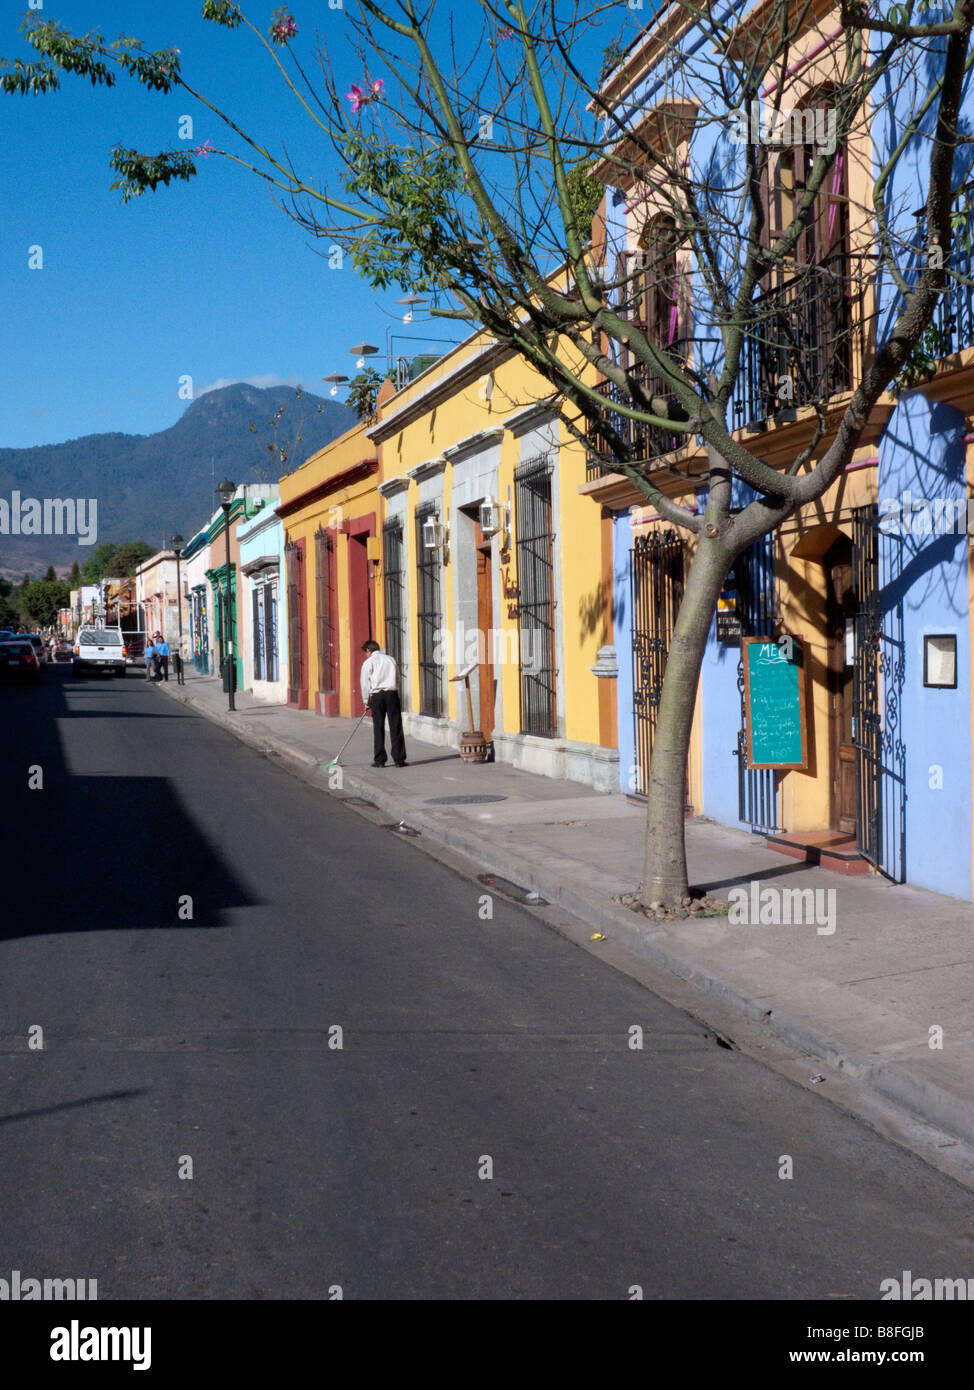 Maisons de couleur vive sur la Calle Reforma qui se termine par une vista de la Sierra Madre del Sur les montagnes qui entourent l'Oaxaca Banque D'Images